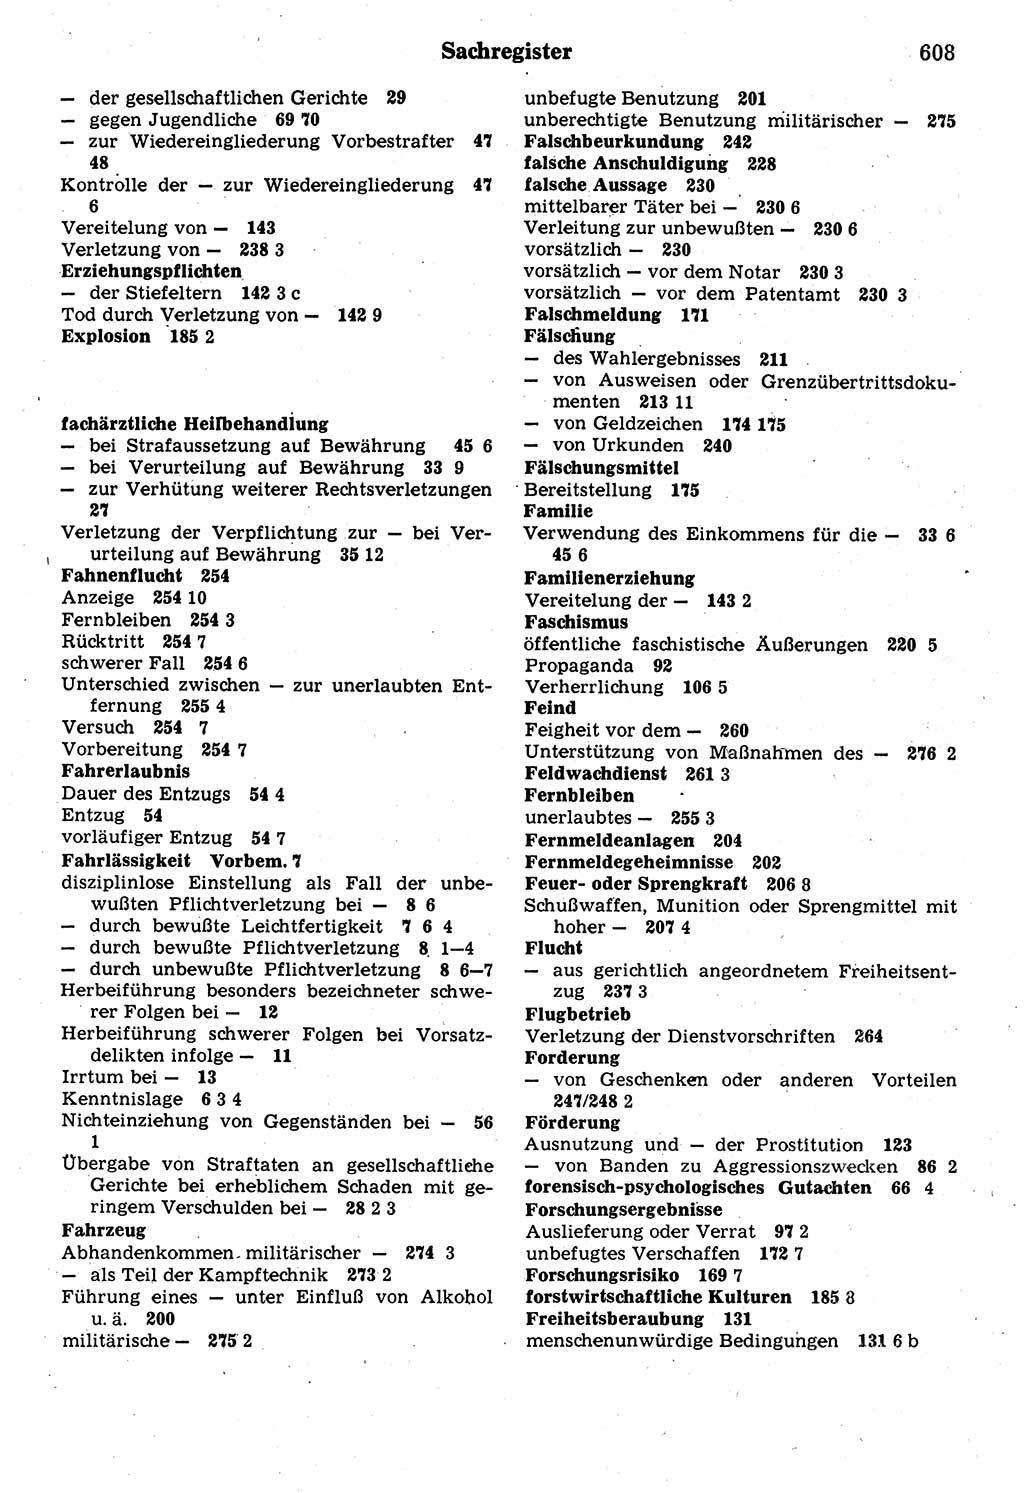 Strafrecht der Deutschen Demokratischen Republik (DDR), Kommentar zum Strafgesetzbuch (StGB) 1987, Seite 608 (Strafr. DDR Komm. StGB 1987, S. 608)